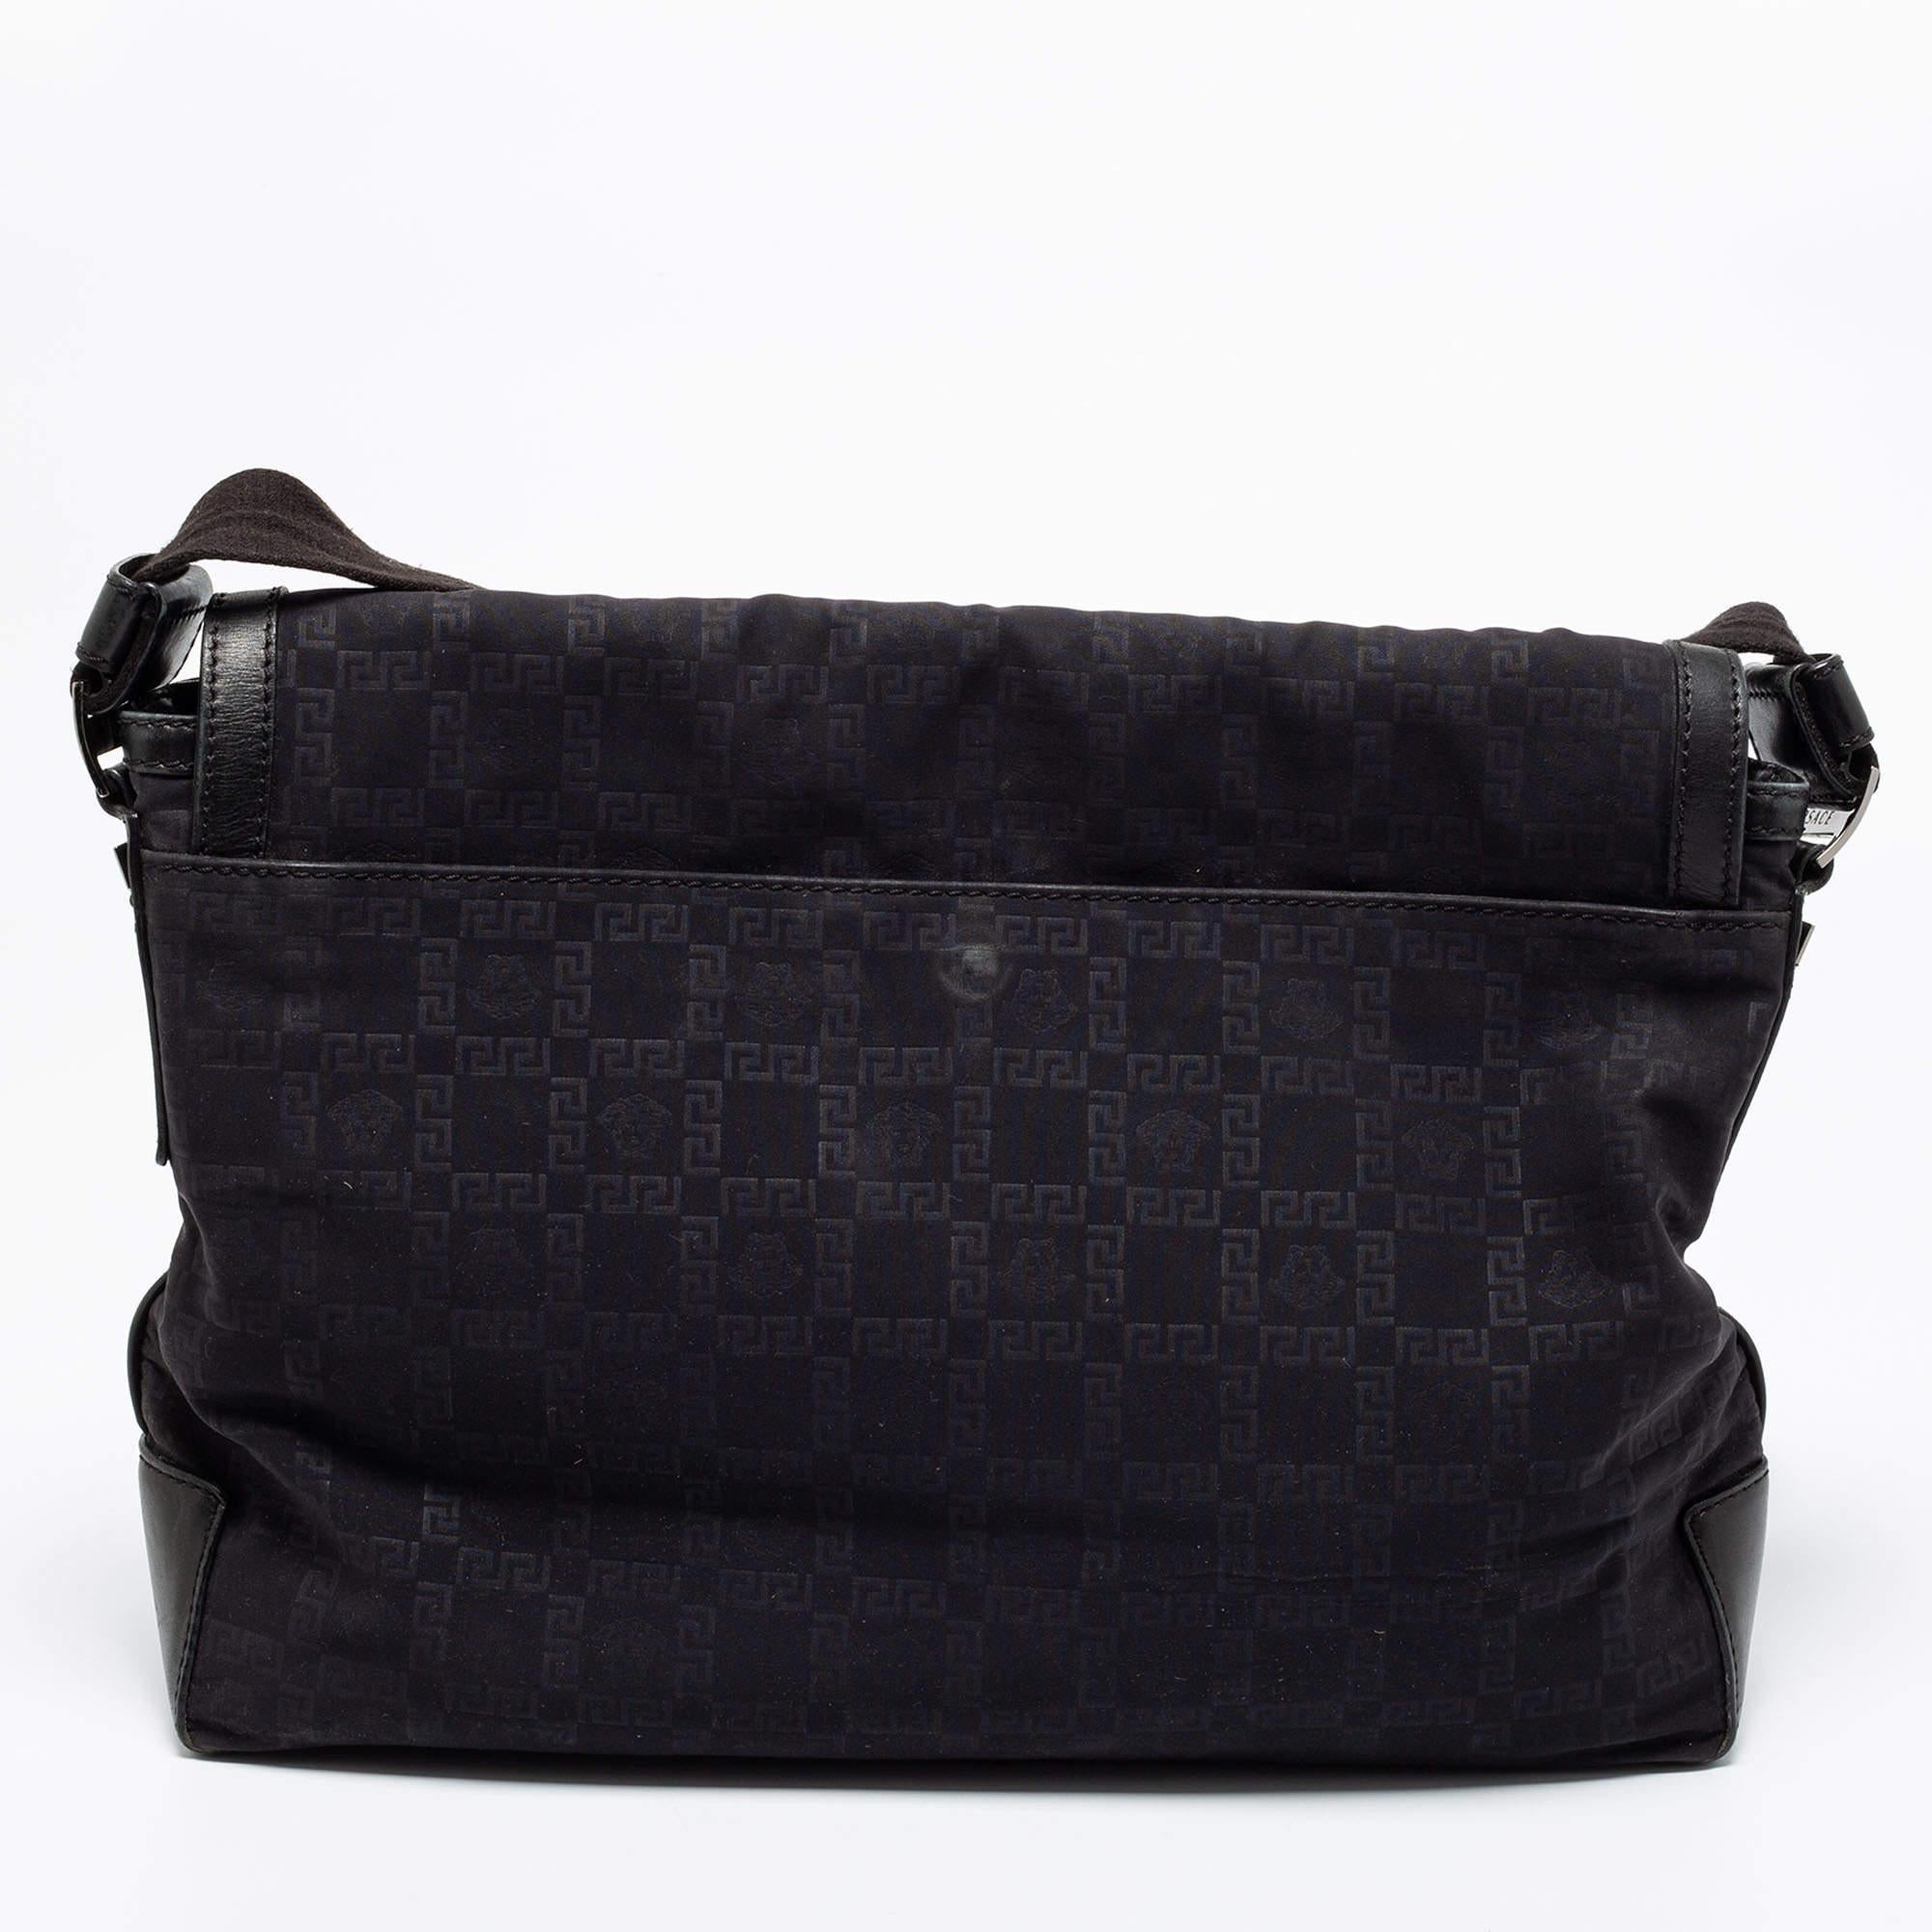 Accessoire de style pratique, ce sac Versace noir sera un accessoire super utile pour voyager ou faire ses courses quotidiennes. Fabriqué en nylon, il est doté d'une base en cuir, d'une longue bandoulière et d'un compartiment spacieux. Vous pouvez